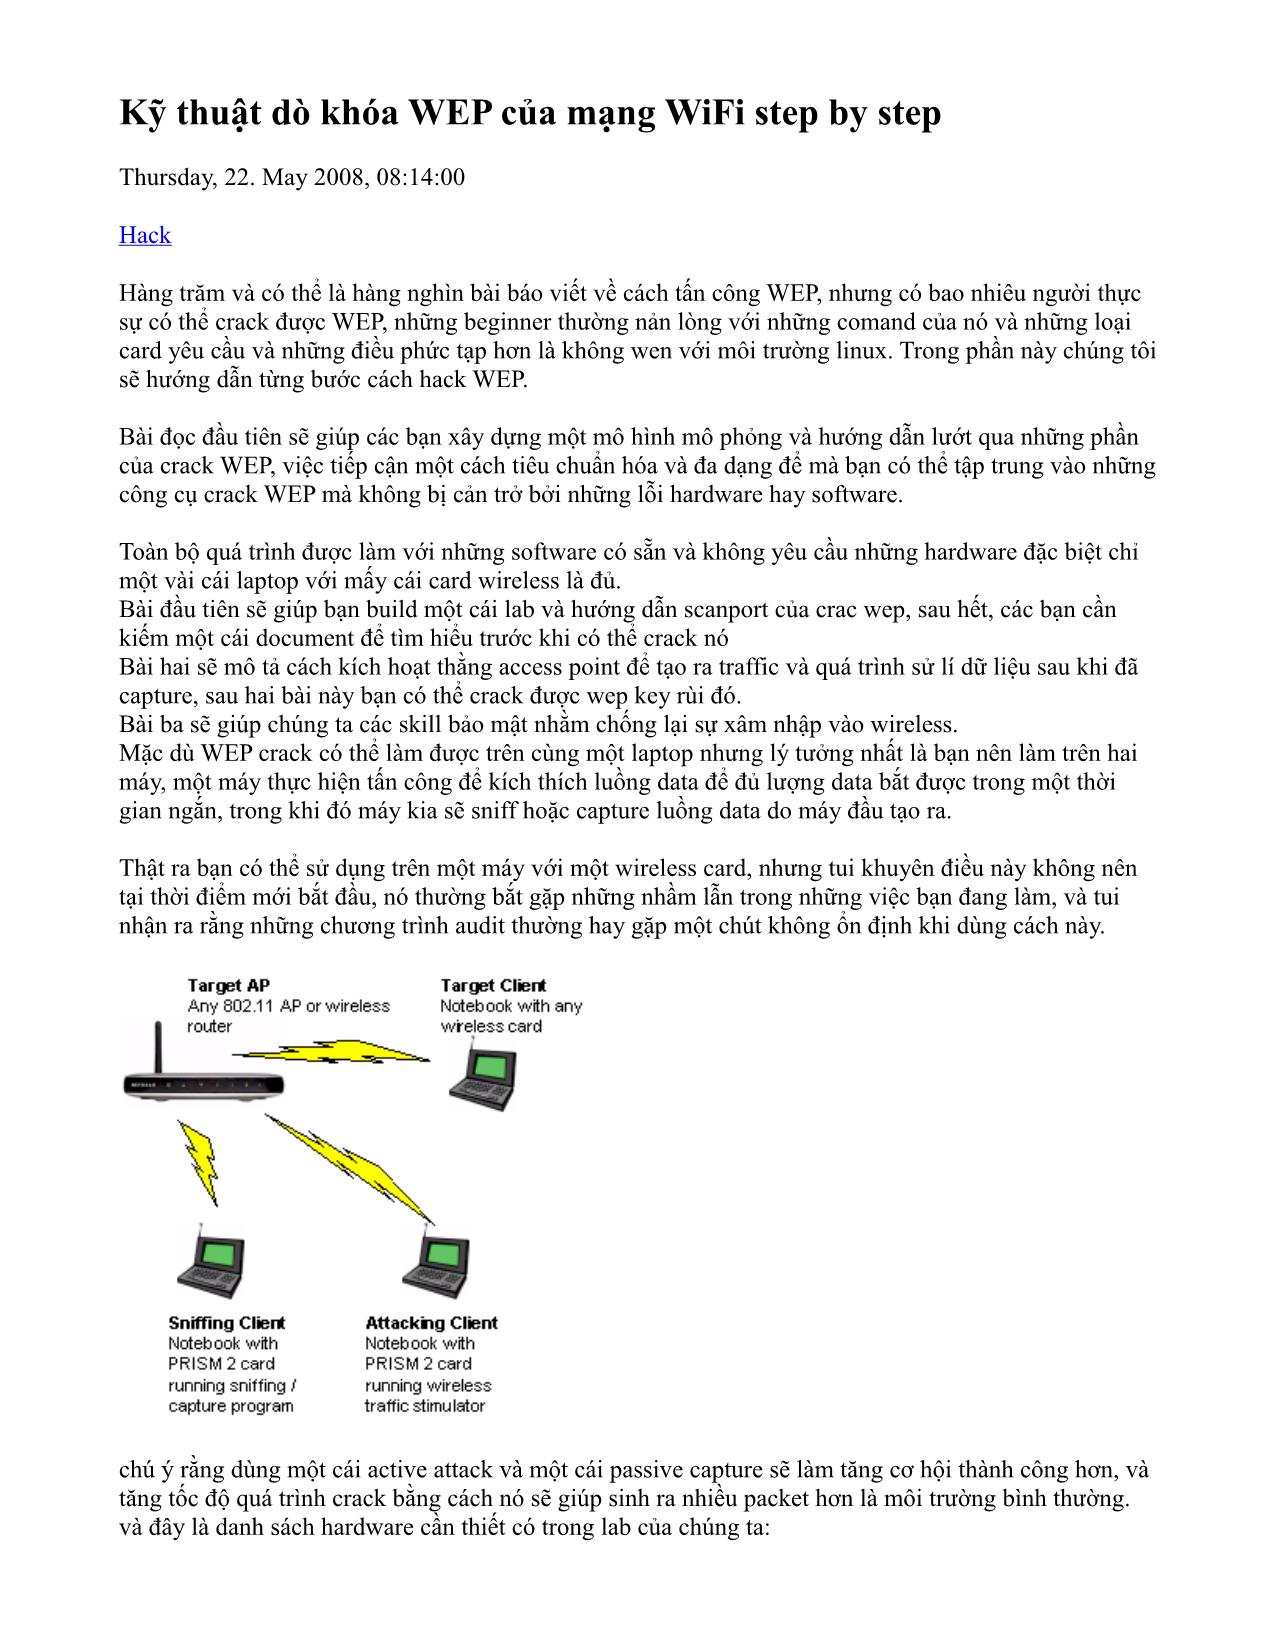 Kỹ thuật dò khóa WEP của mạng WiFi step by step trang 2